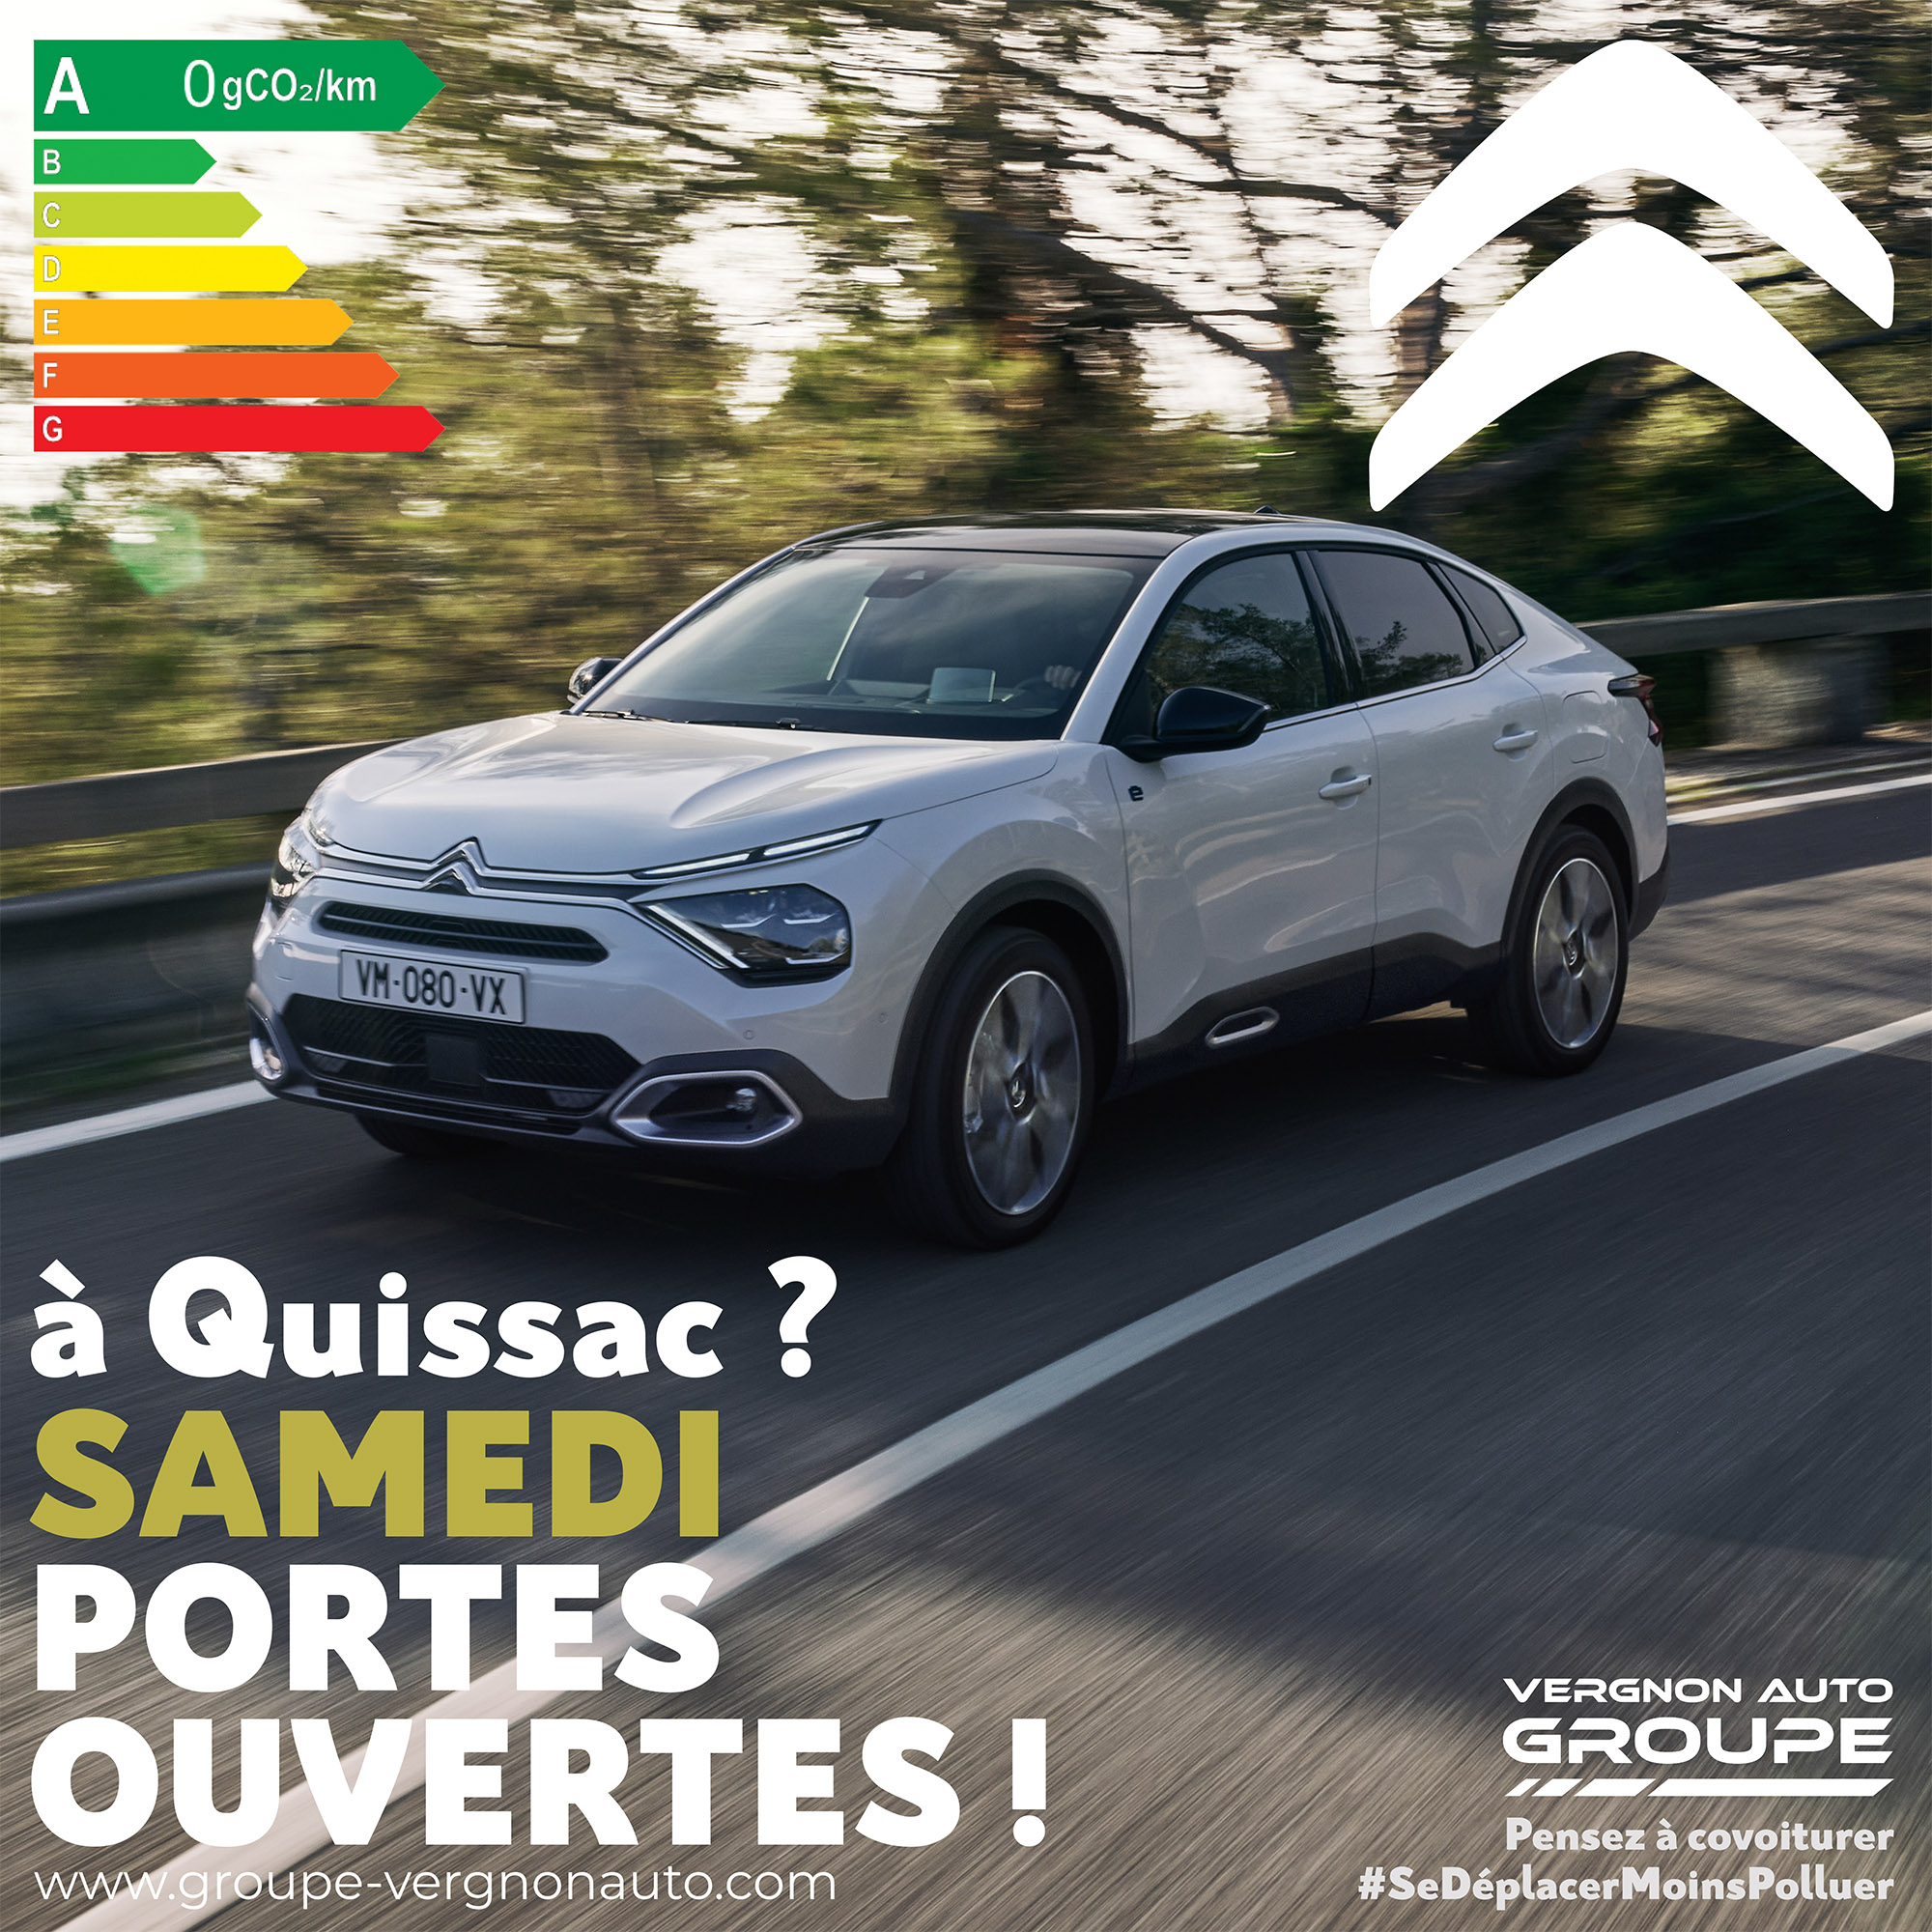 Le samedi 17 septembre 2022, venez profiter à Quissac (Gard - 30) de nos portes ouvertes Citroën !